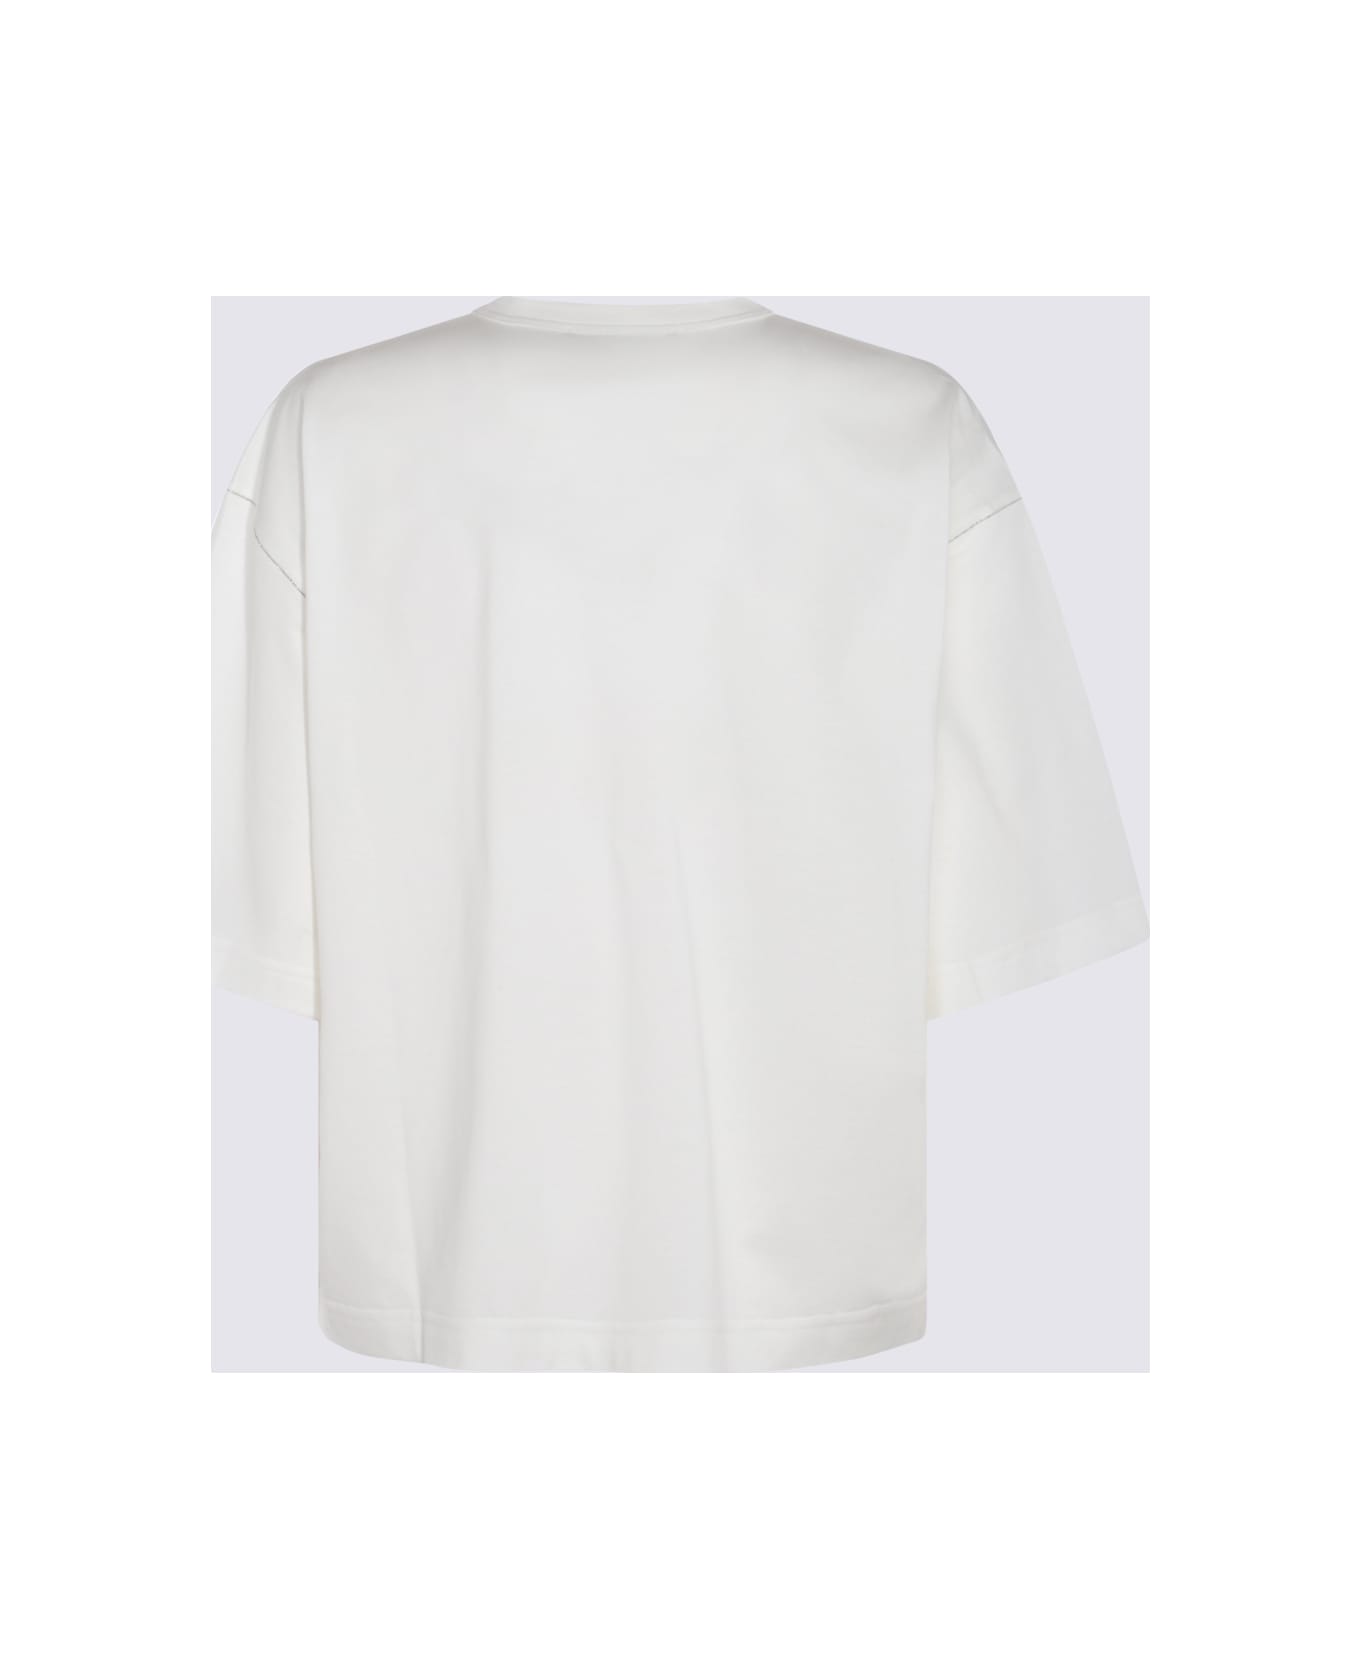 Fabiana Filippi White Cotton T-shirt - White Tシャツ